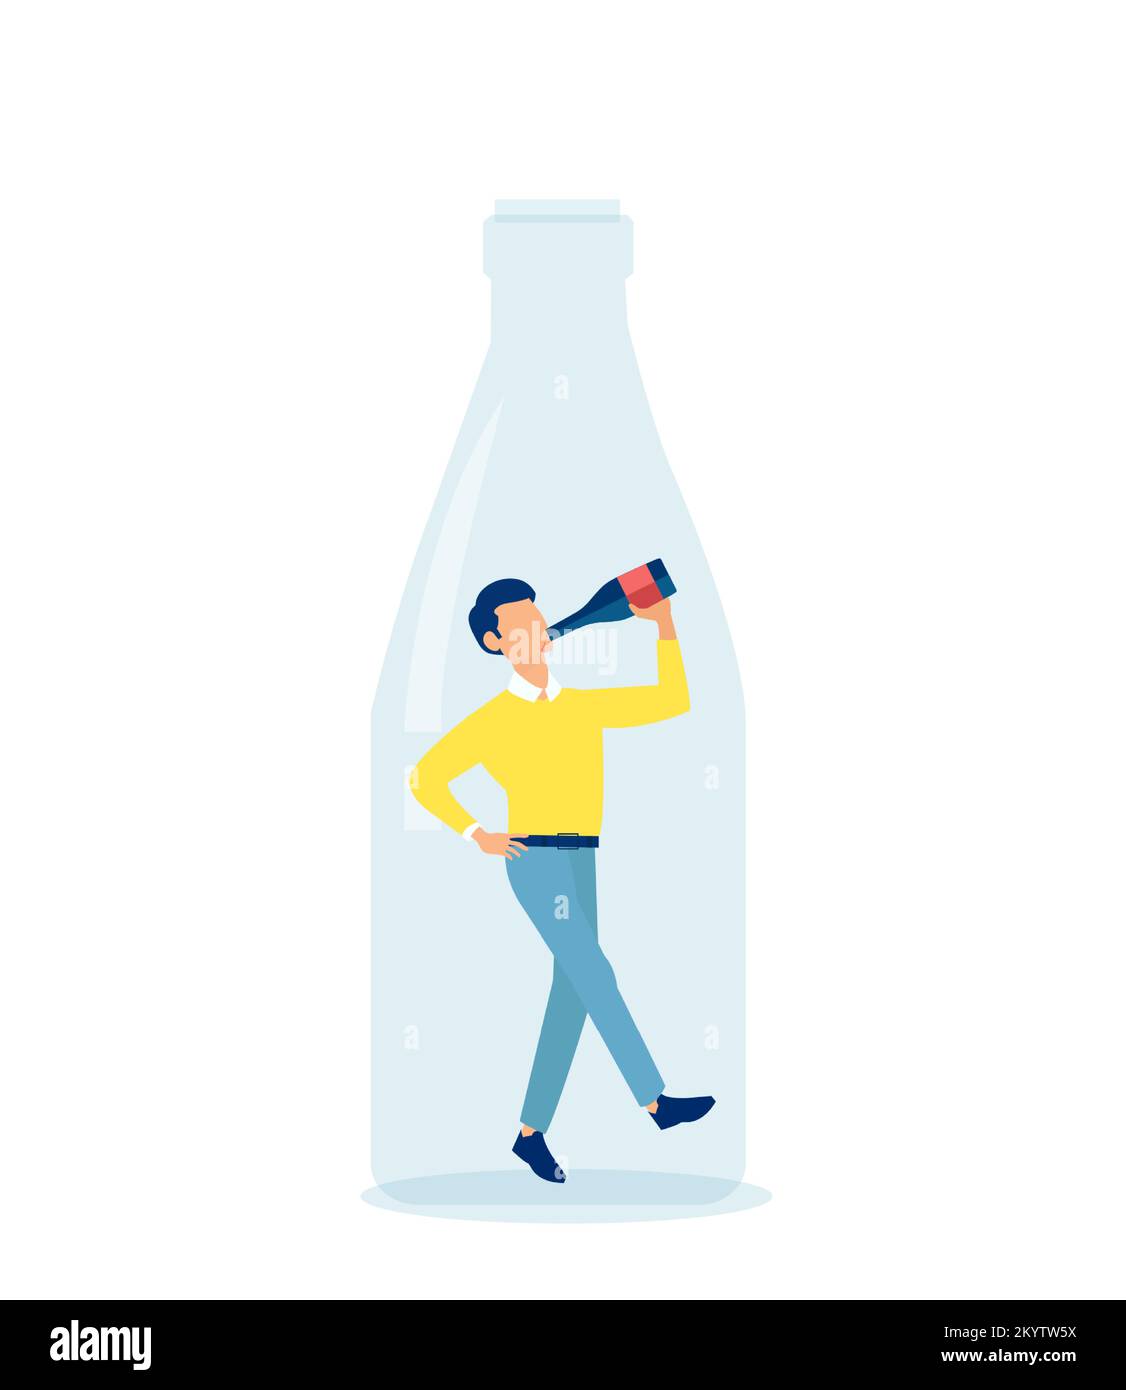 Vecteur d'une personne alcoolique jeune homme qui boit du vin à l'intérieur d'une bouteille Illustration de Vecteur